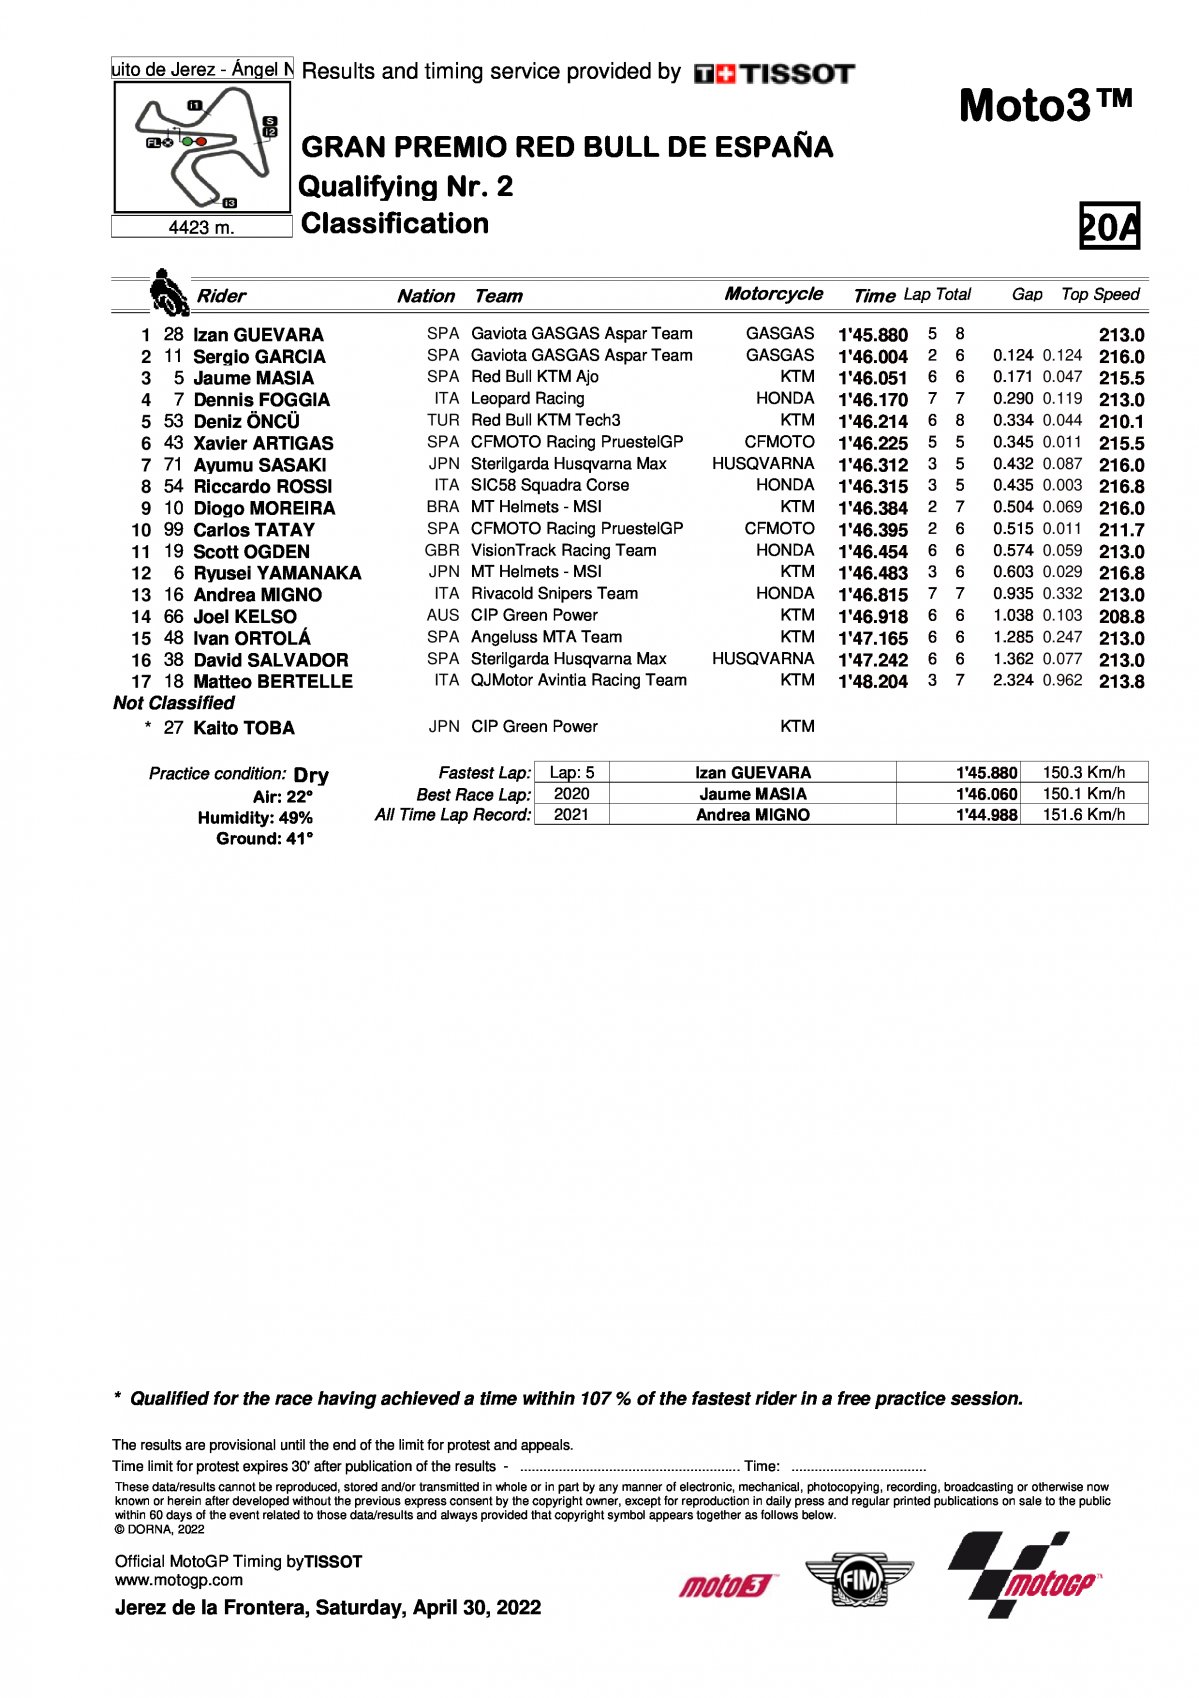 Результаты квалификации Q2 SpanishGP Moto3 (30/04/2022)